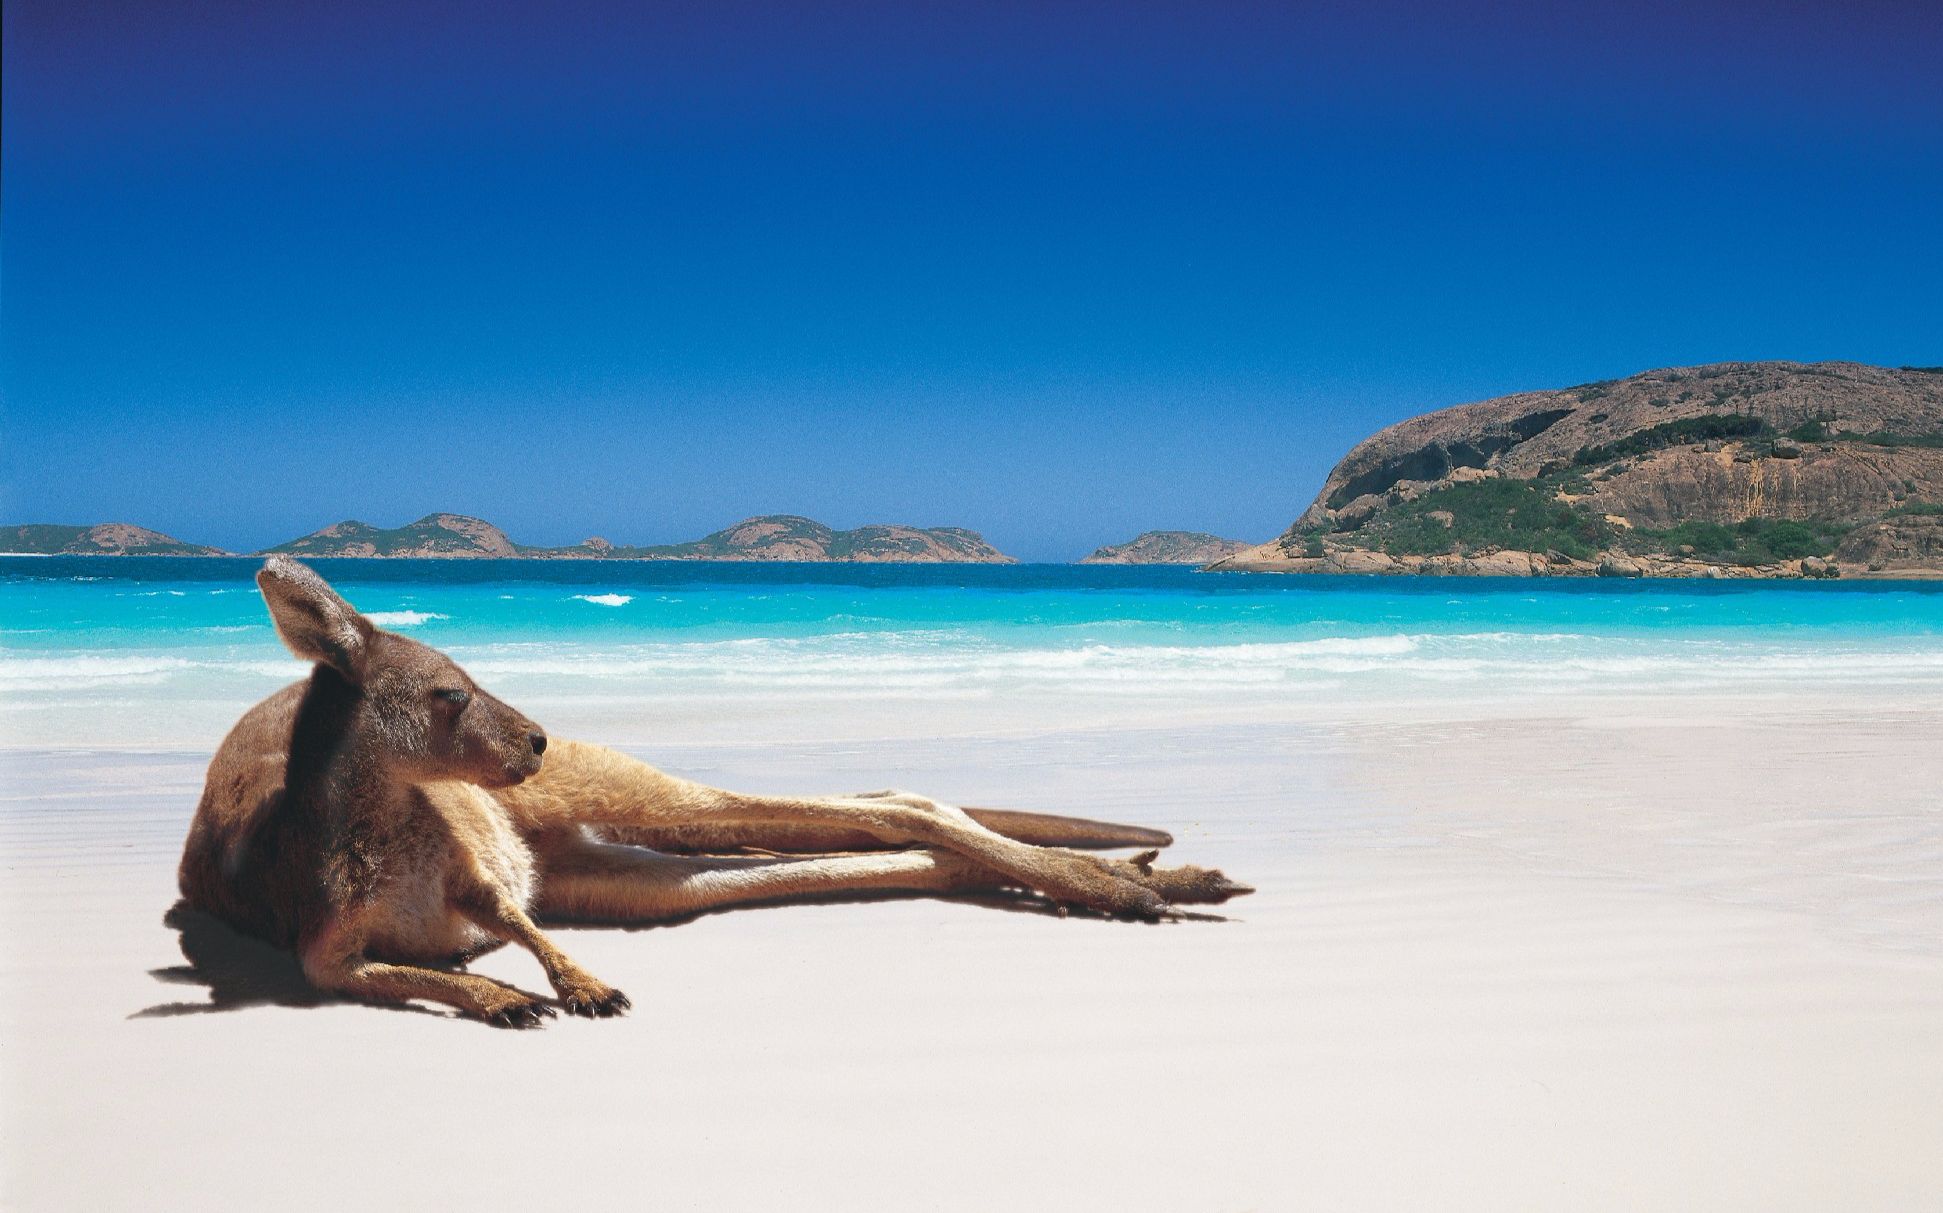 自驾20000公里环澳旅行 第24集 澳洲最白沙滩——幸运湾_趣味科普人文